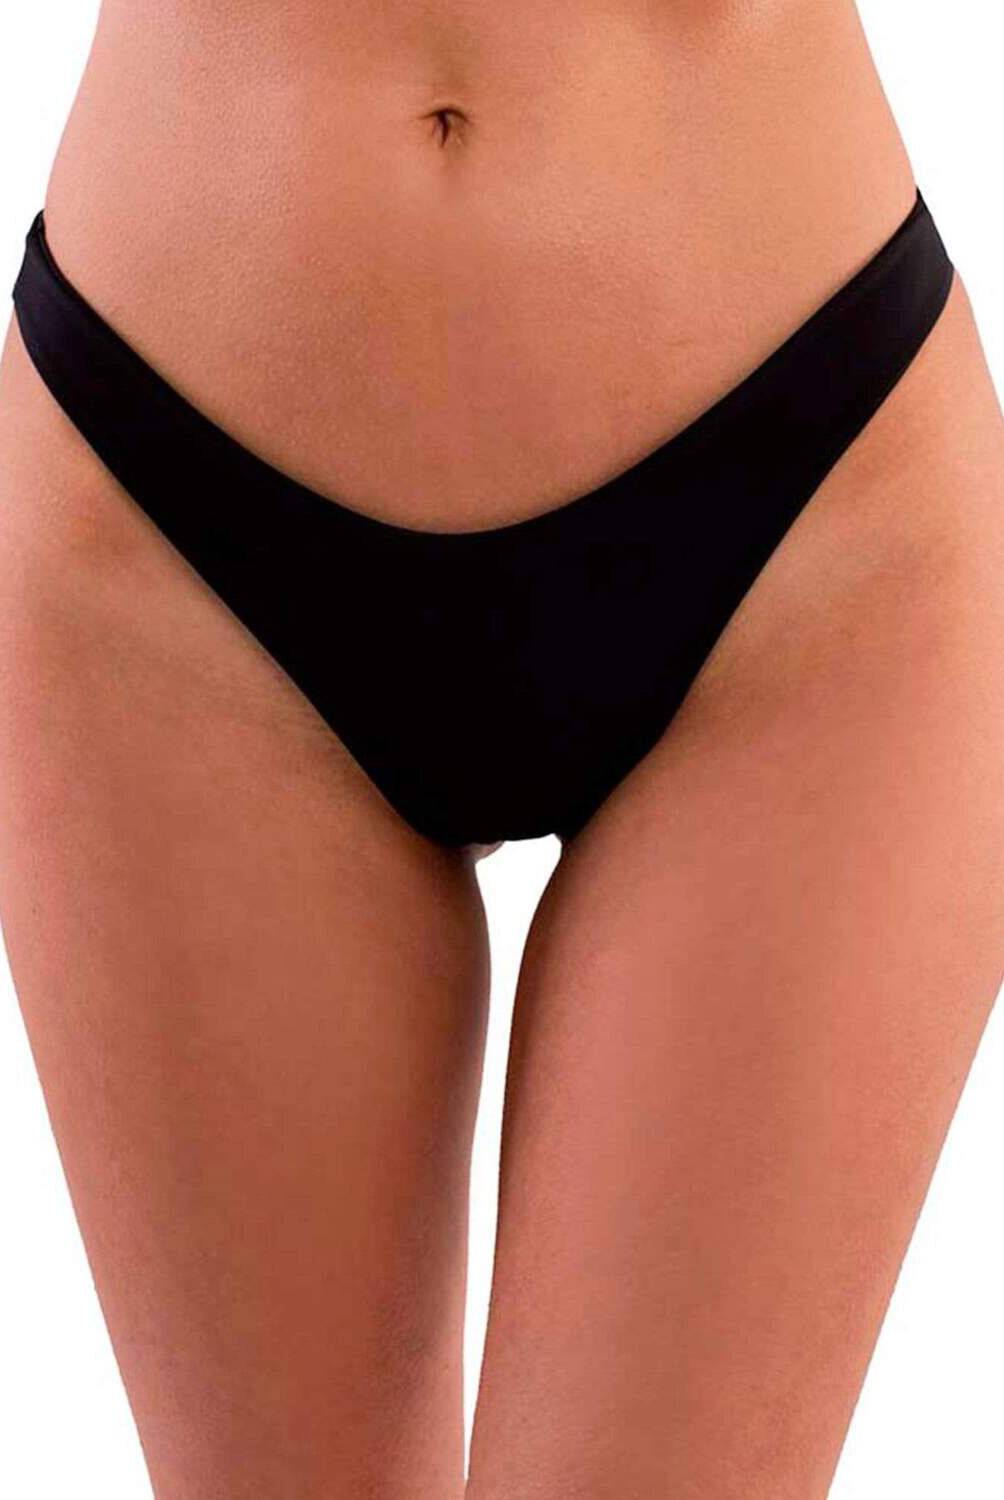 JOSE HERRERA BIKINIS - Bikini Bottom Mujer